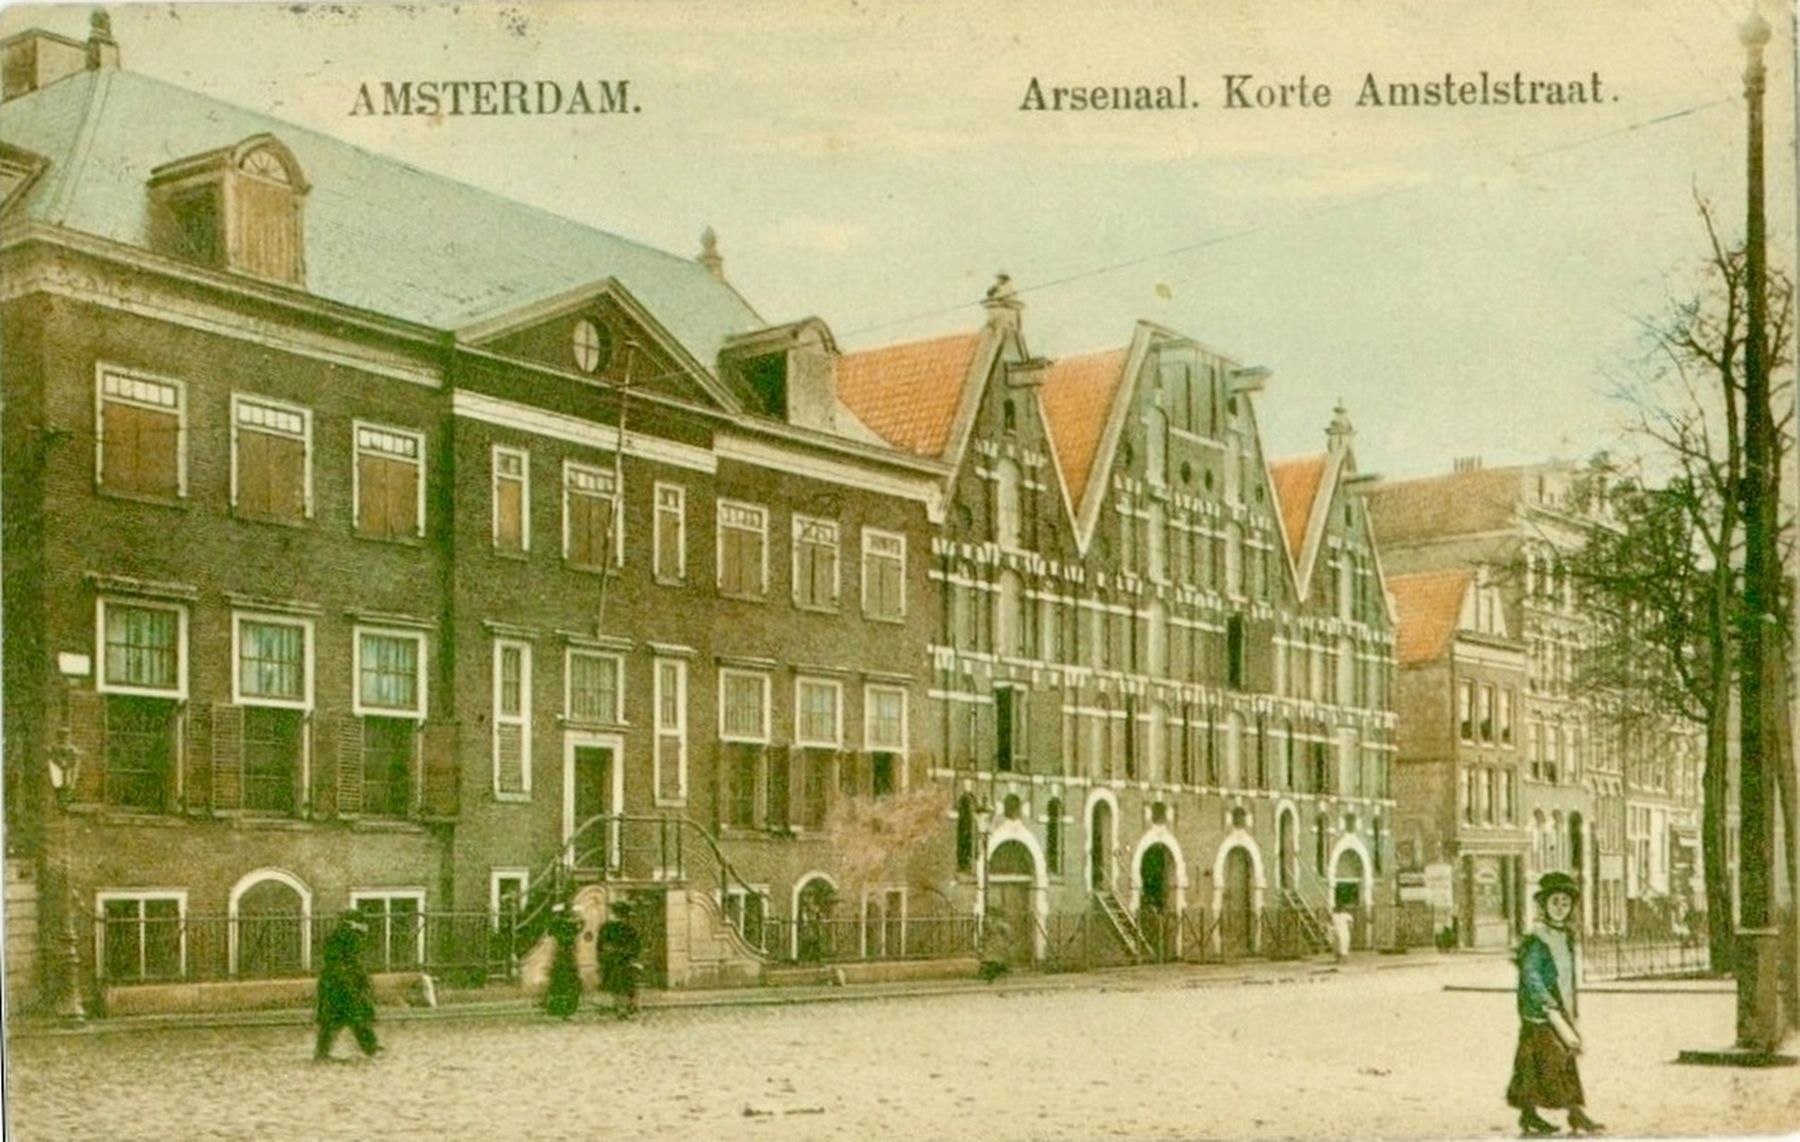 <i>Amsterdam. Arsenaal. Korte Amstelstraat.</i> image. Click for full size.